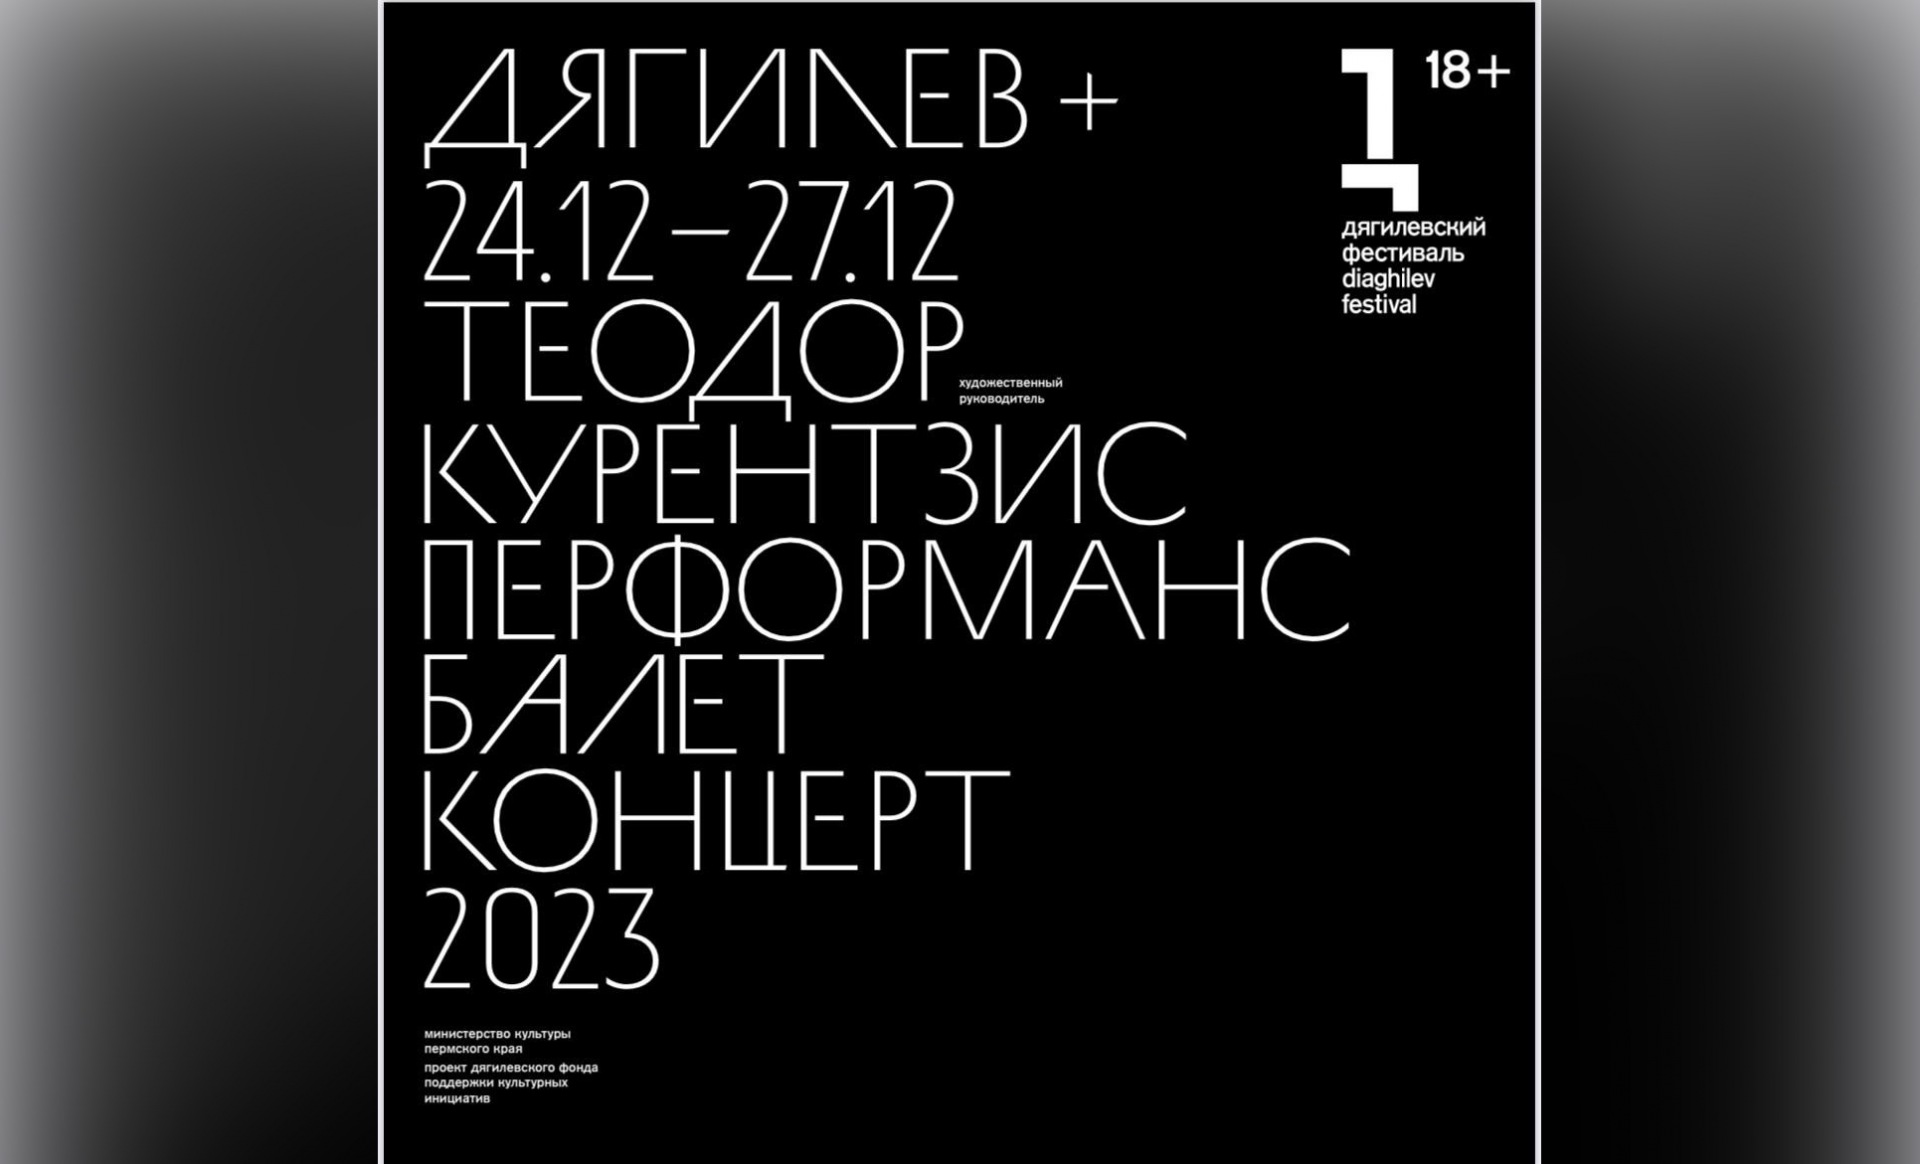 Специальный проект «Дягилев+» пройдет в Перми с 24 по 27 декабря